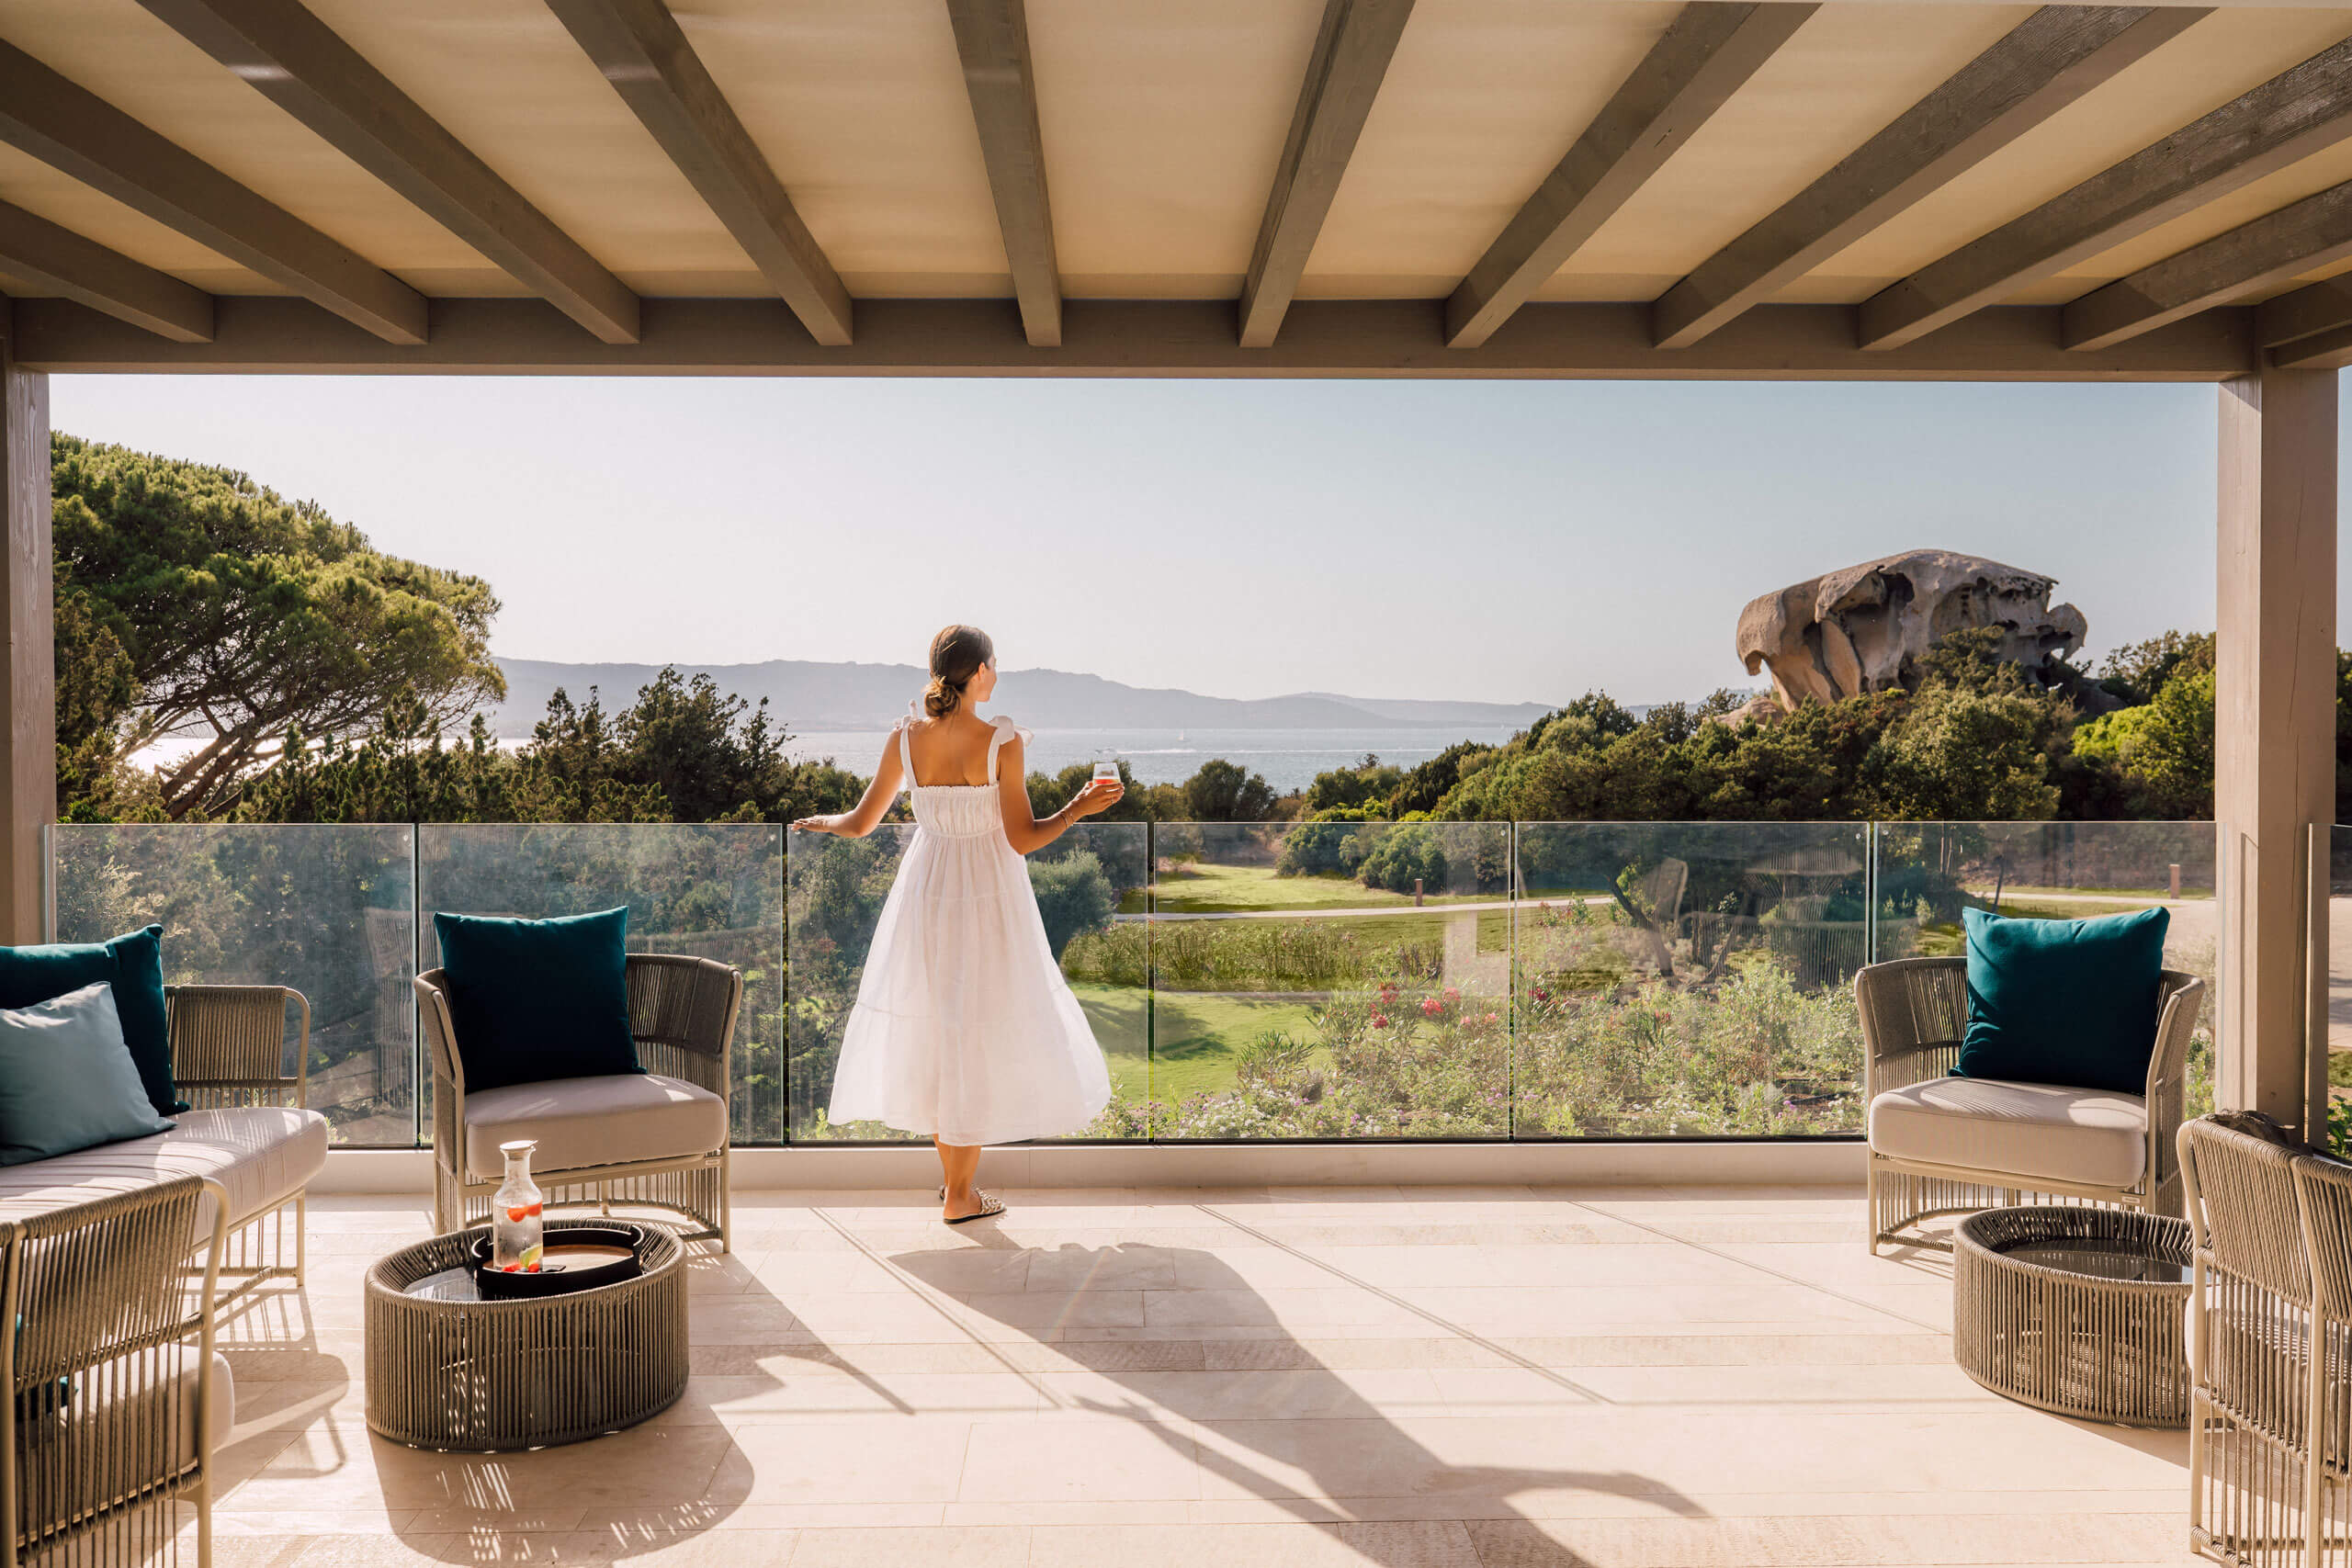 Eine Frau in weißem Kleid steht auf einer Terrasse mit Blick auf eine Landschaft, mit dem Kontext d